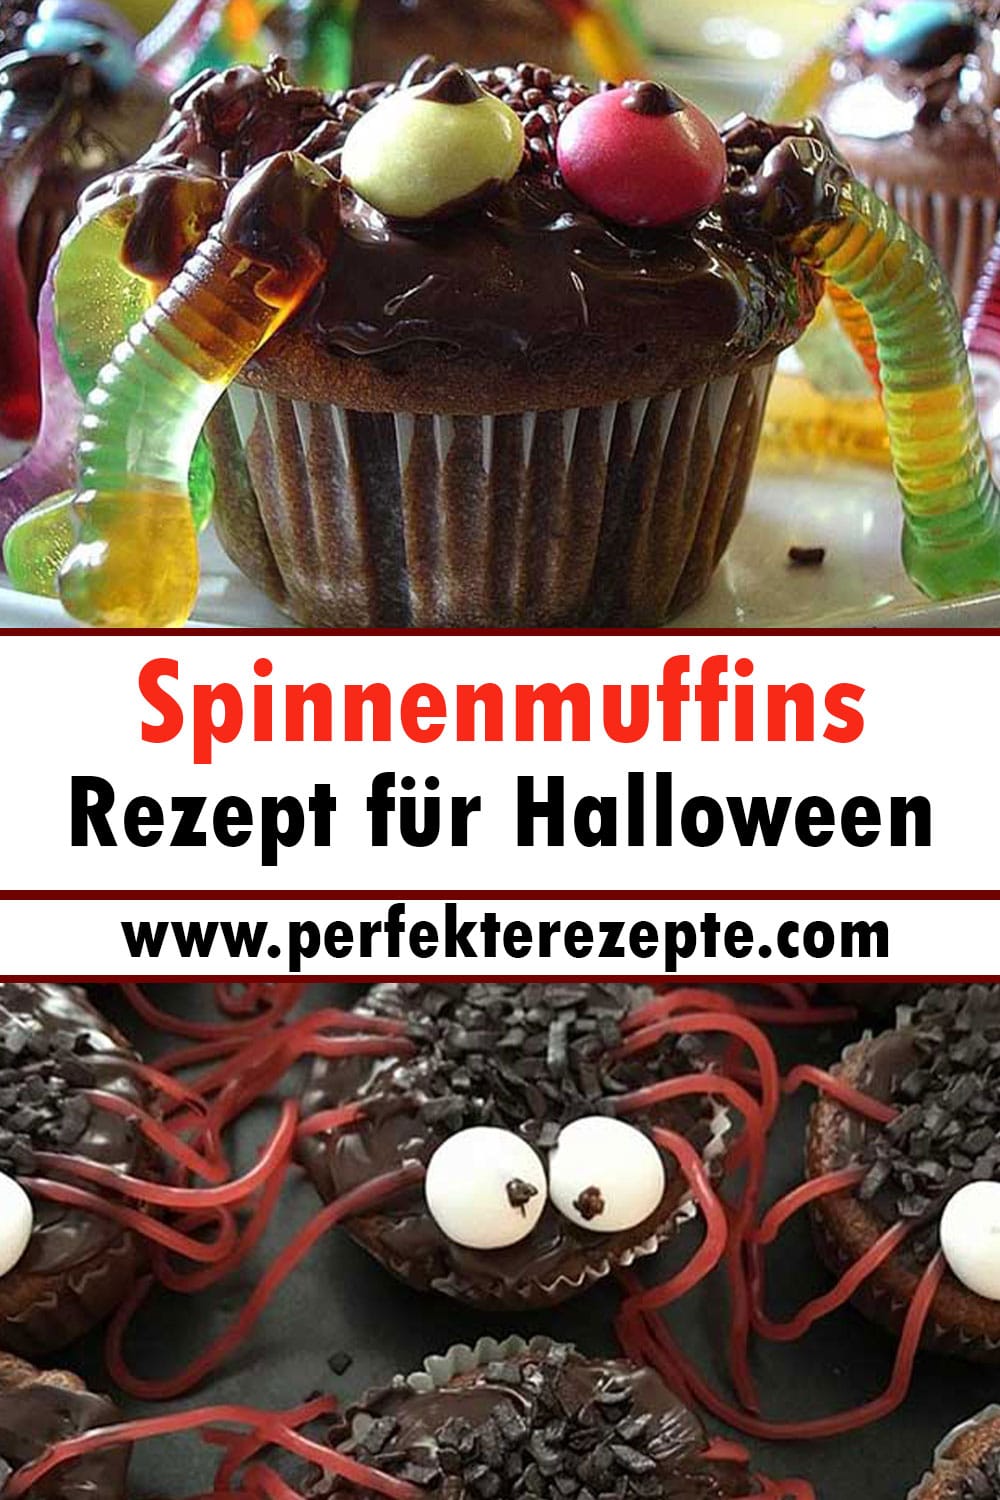 Spinnenmuffins Rezept für Halloween